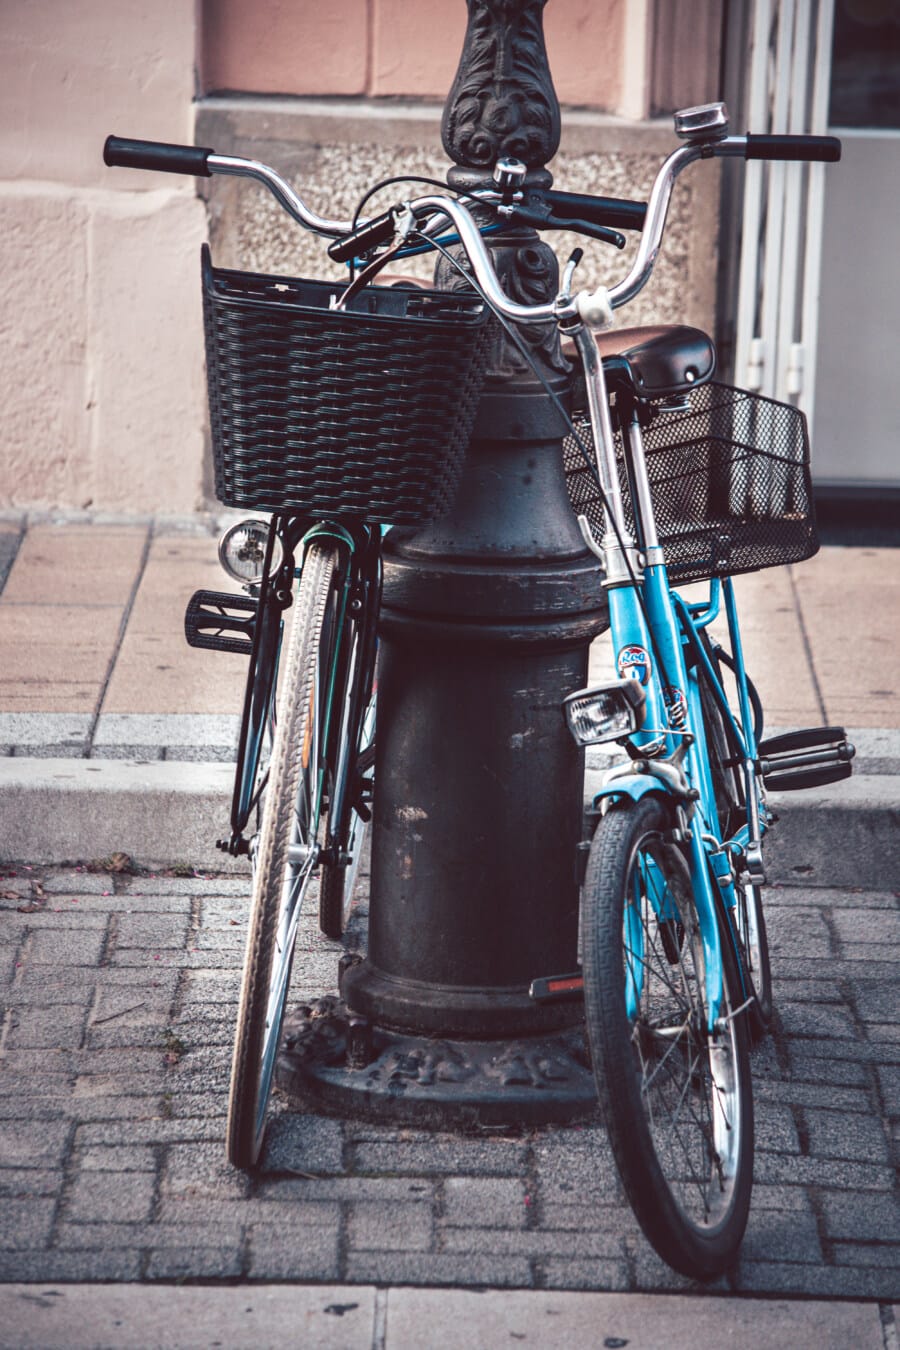 велосипедов, старый стиль, плетеные корзины, Франция, рулевое колесо, ностальгия, тротуар, улица, парковка, колесо